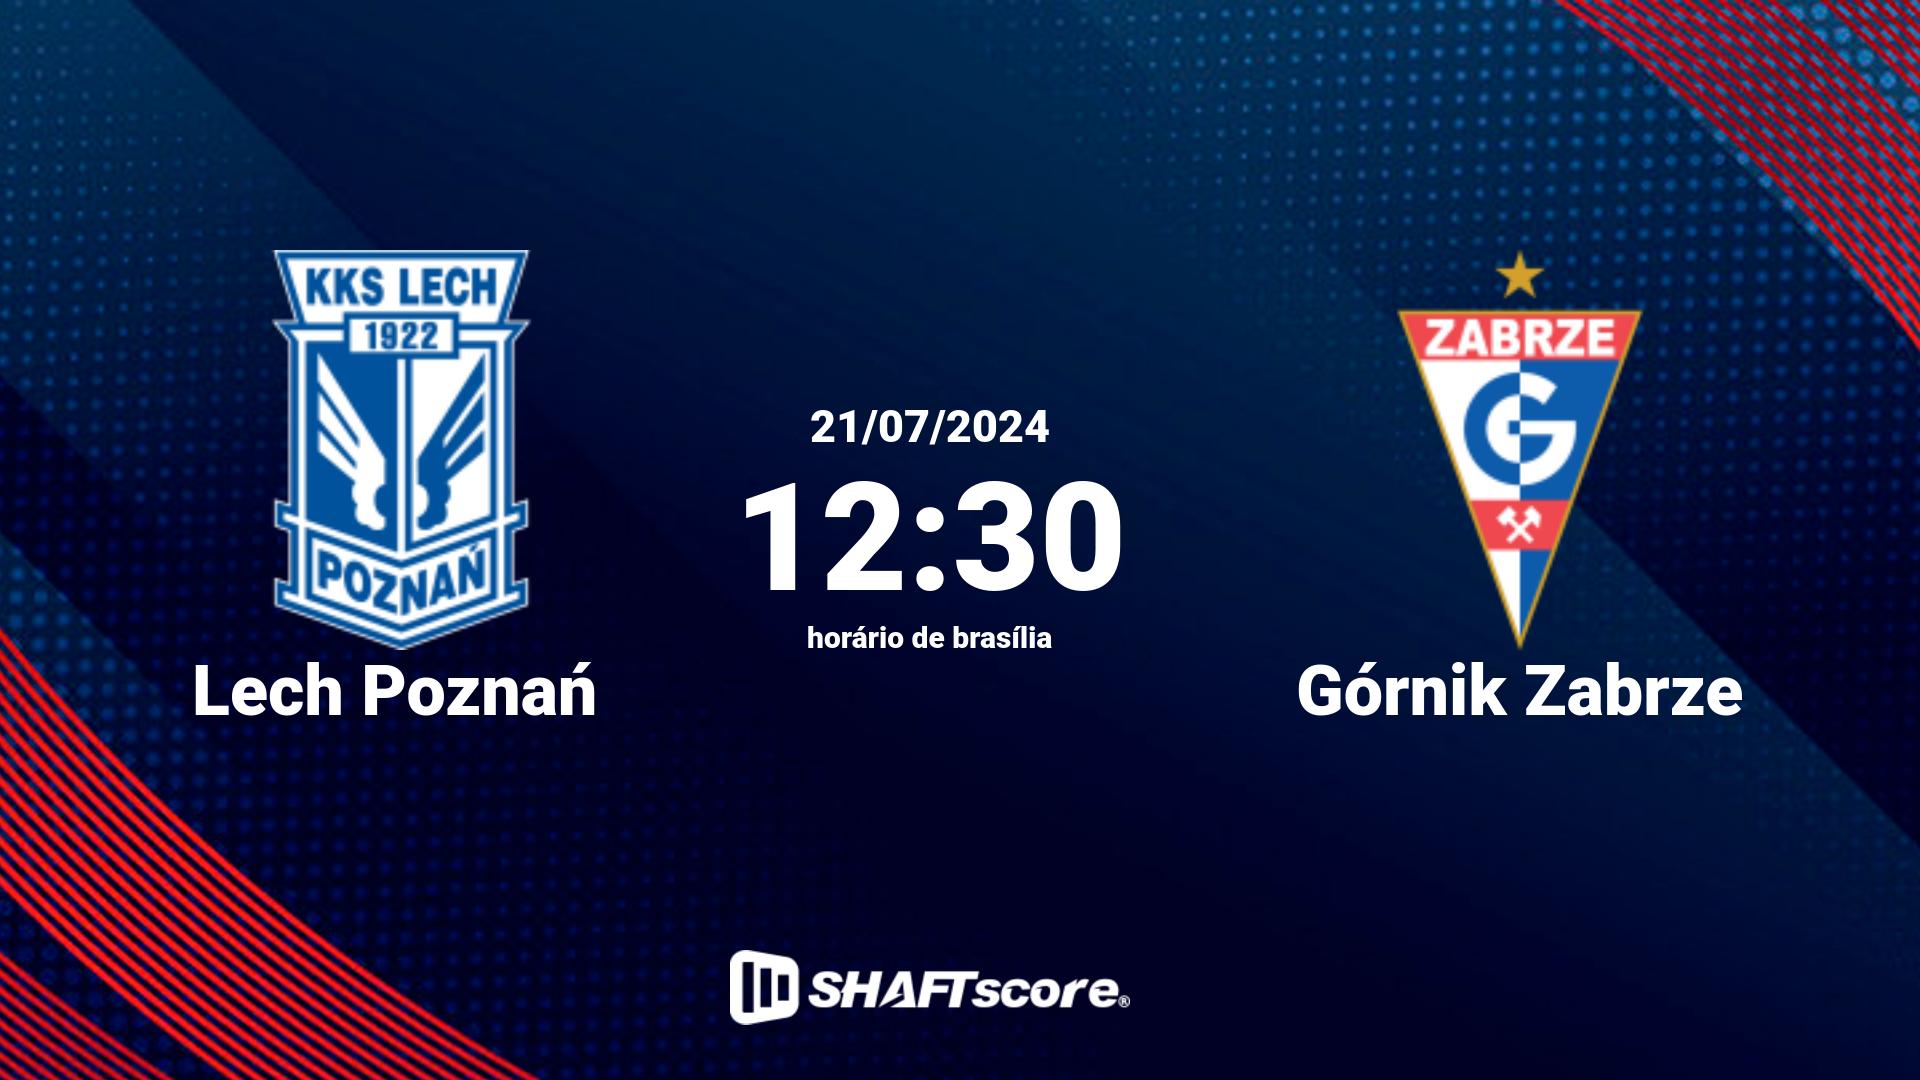 Estatísticas do jogo Lech Poznań vs Górnik Zabrze 21.07 12:30